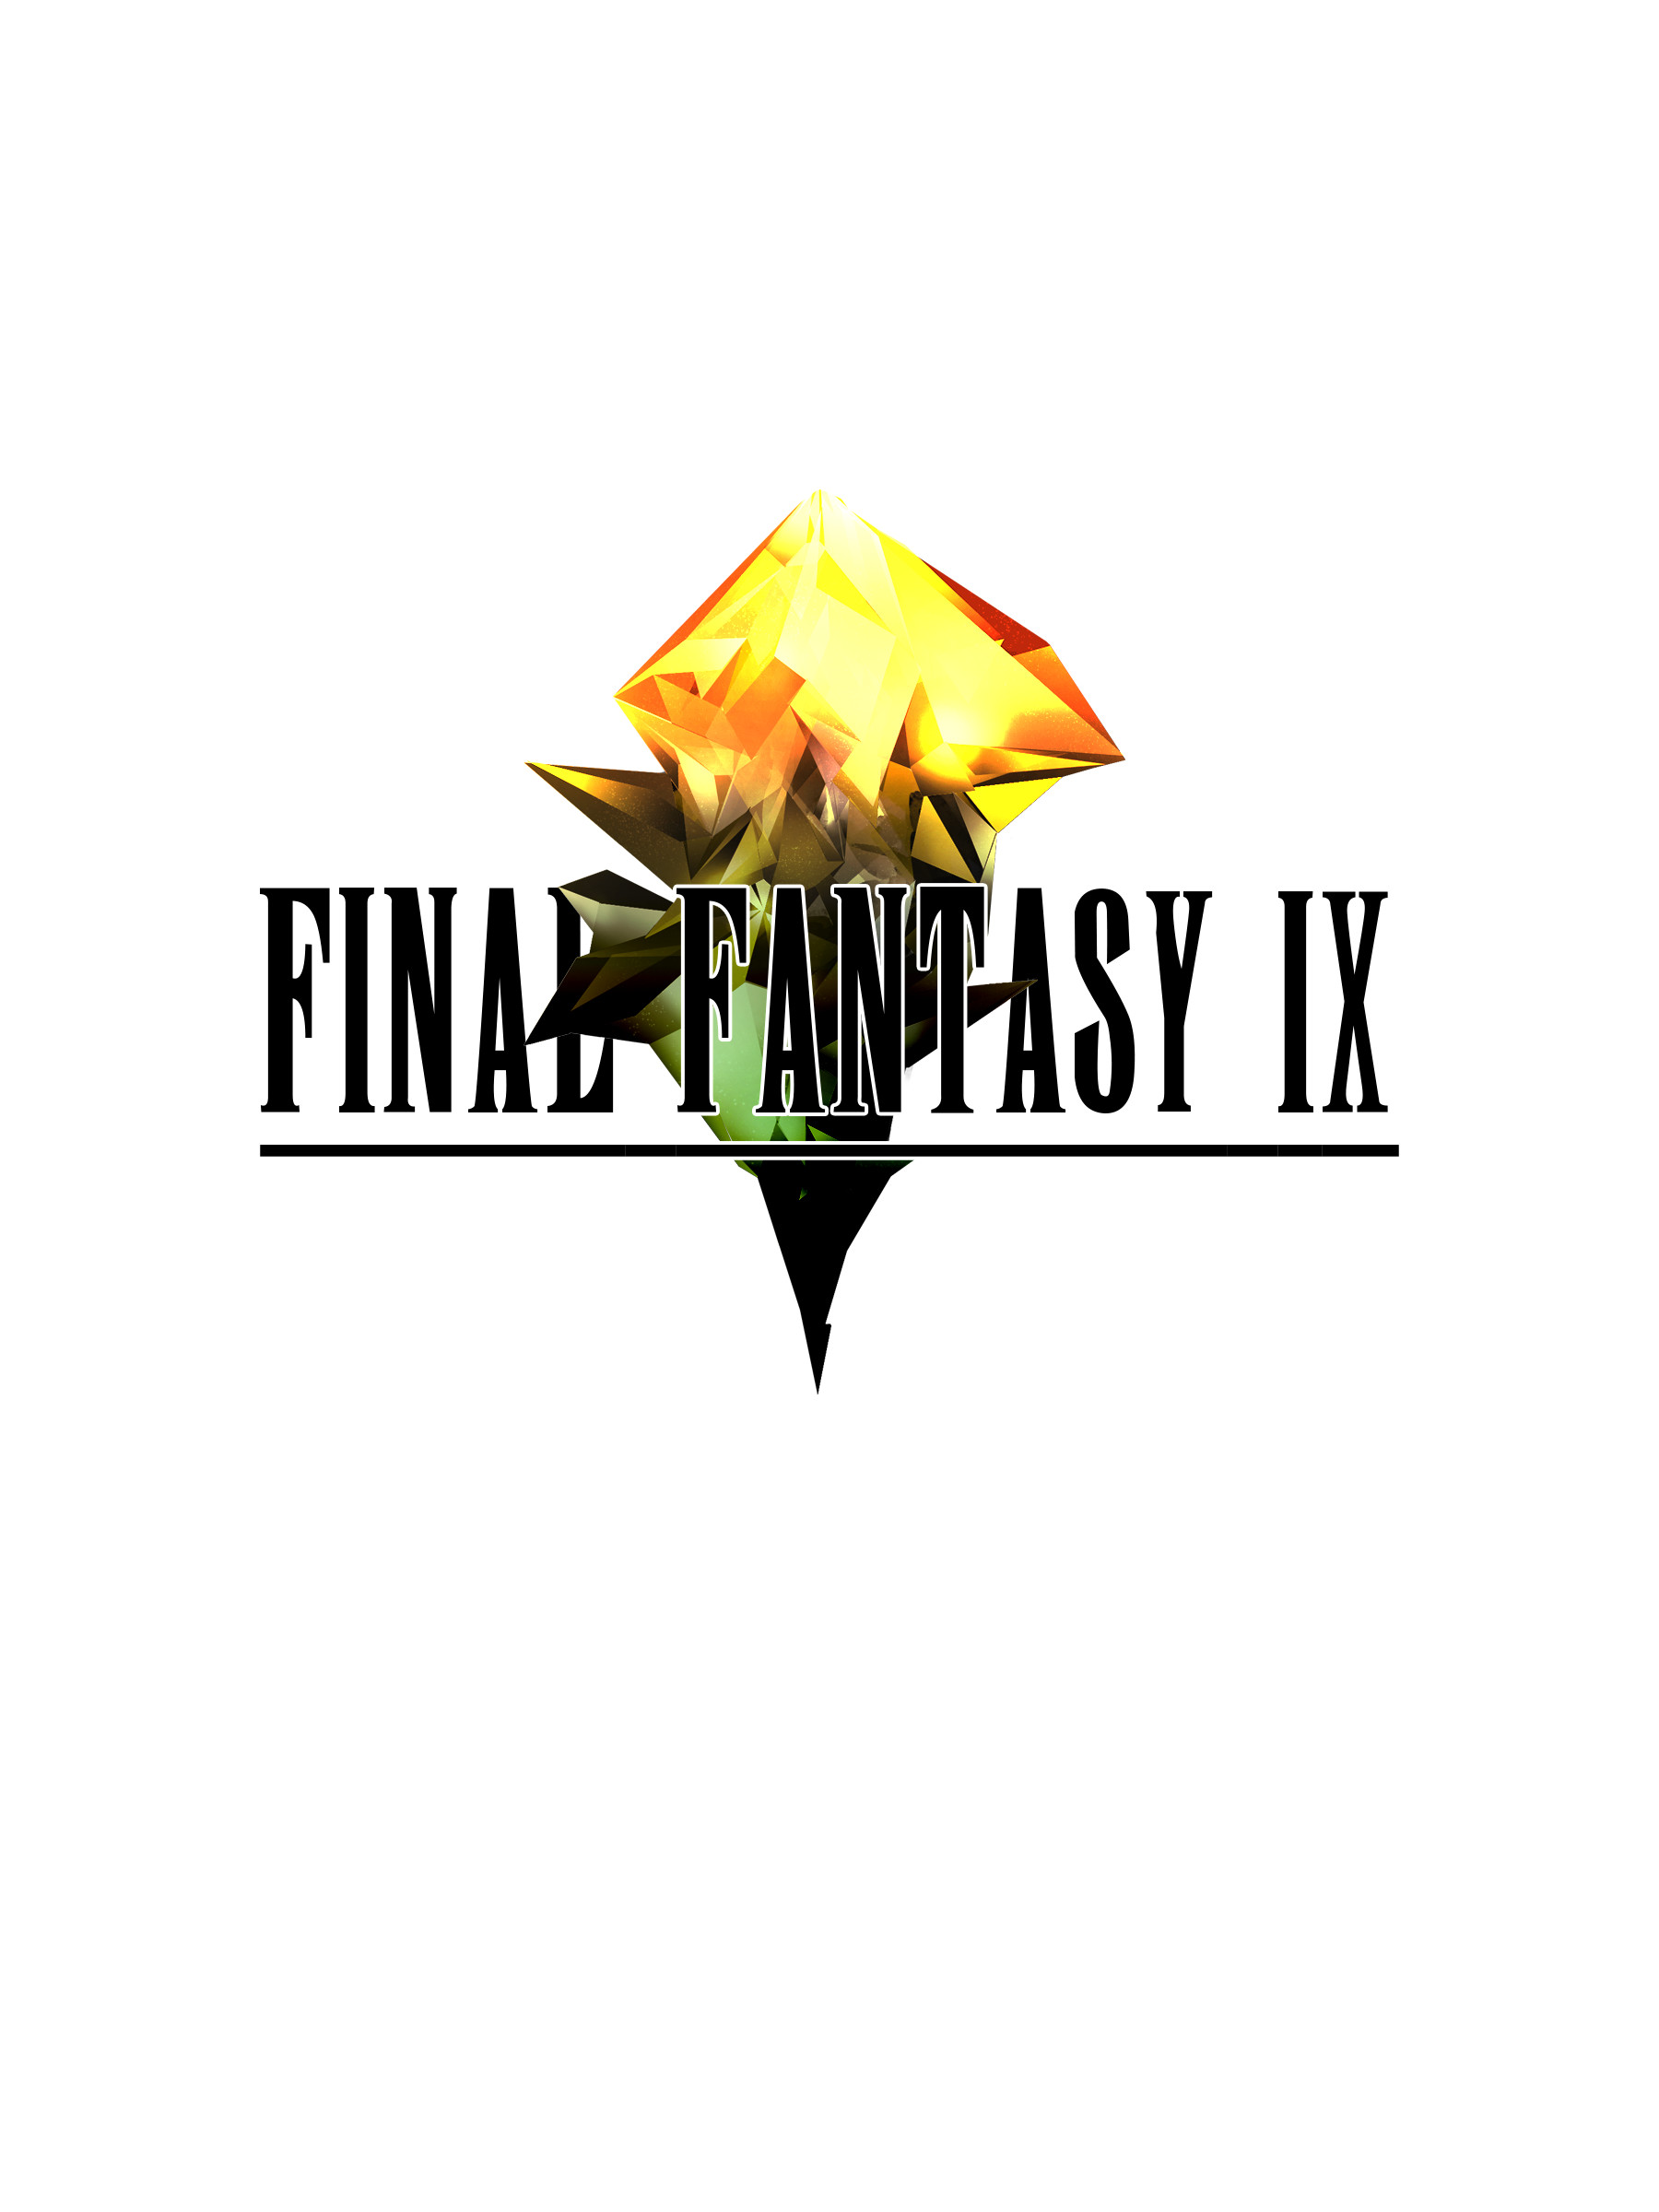 ArtStation - Final Fantasy IX Fan logo